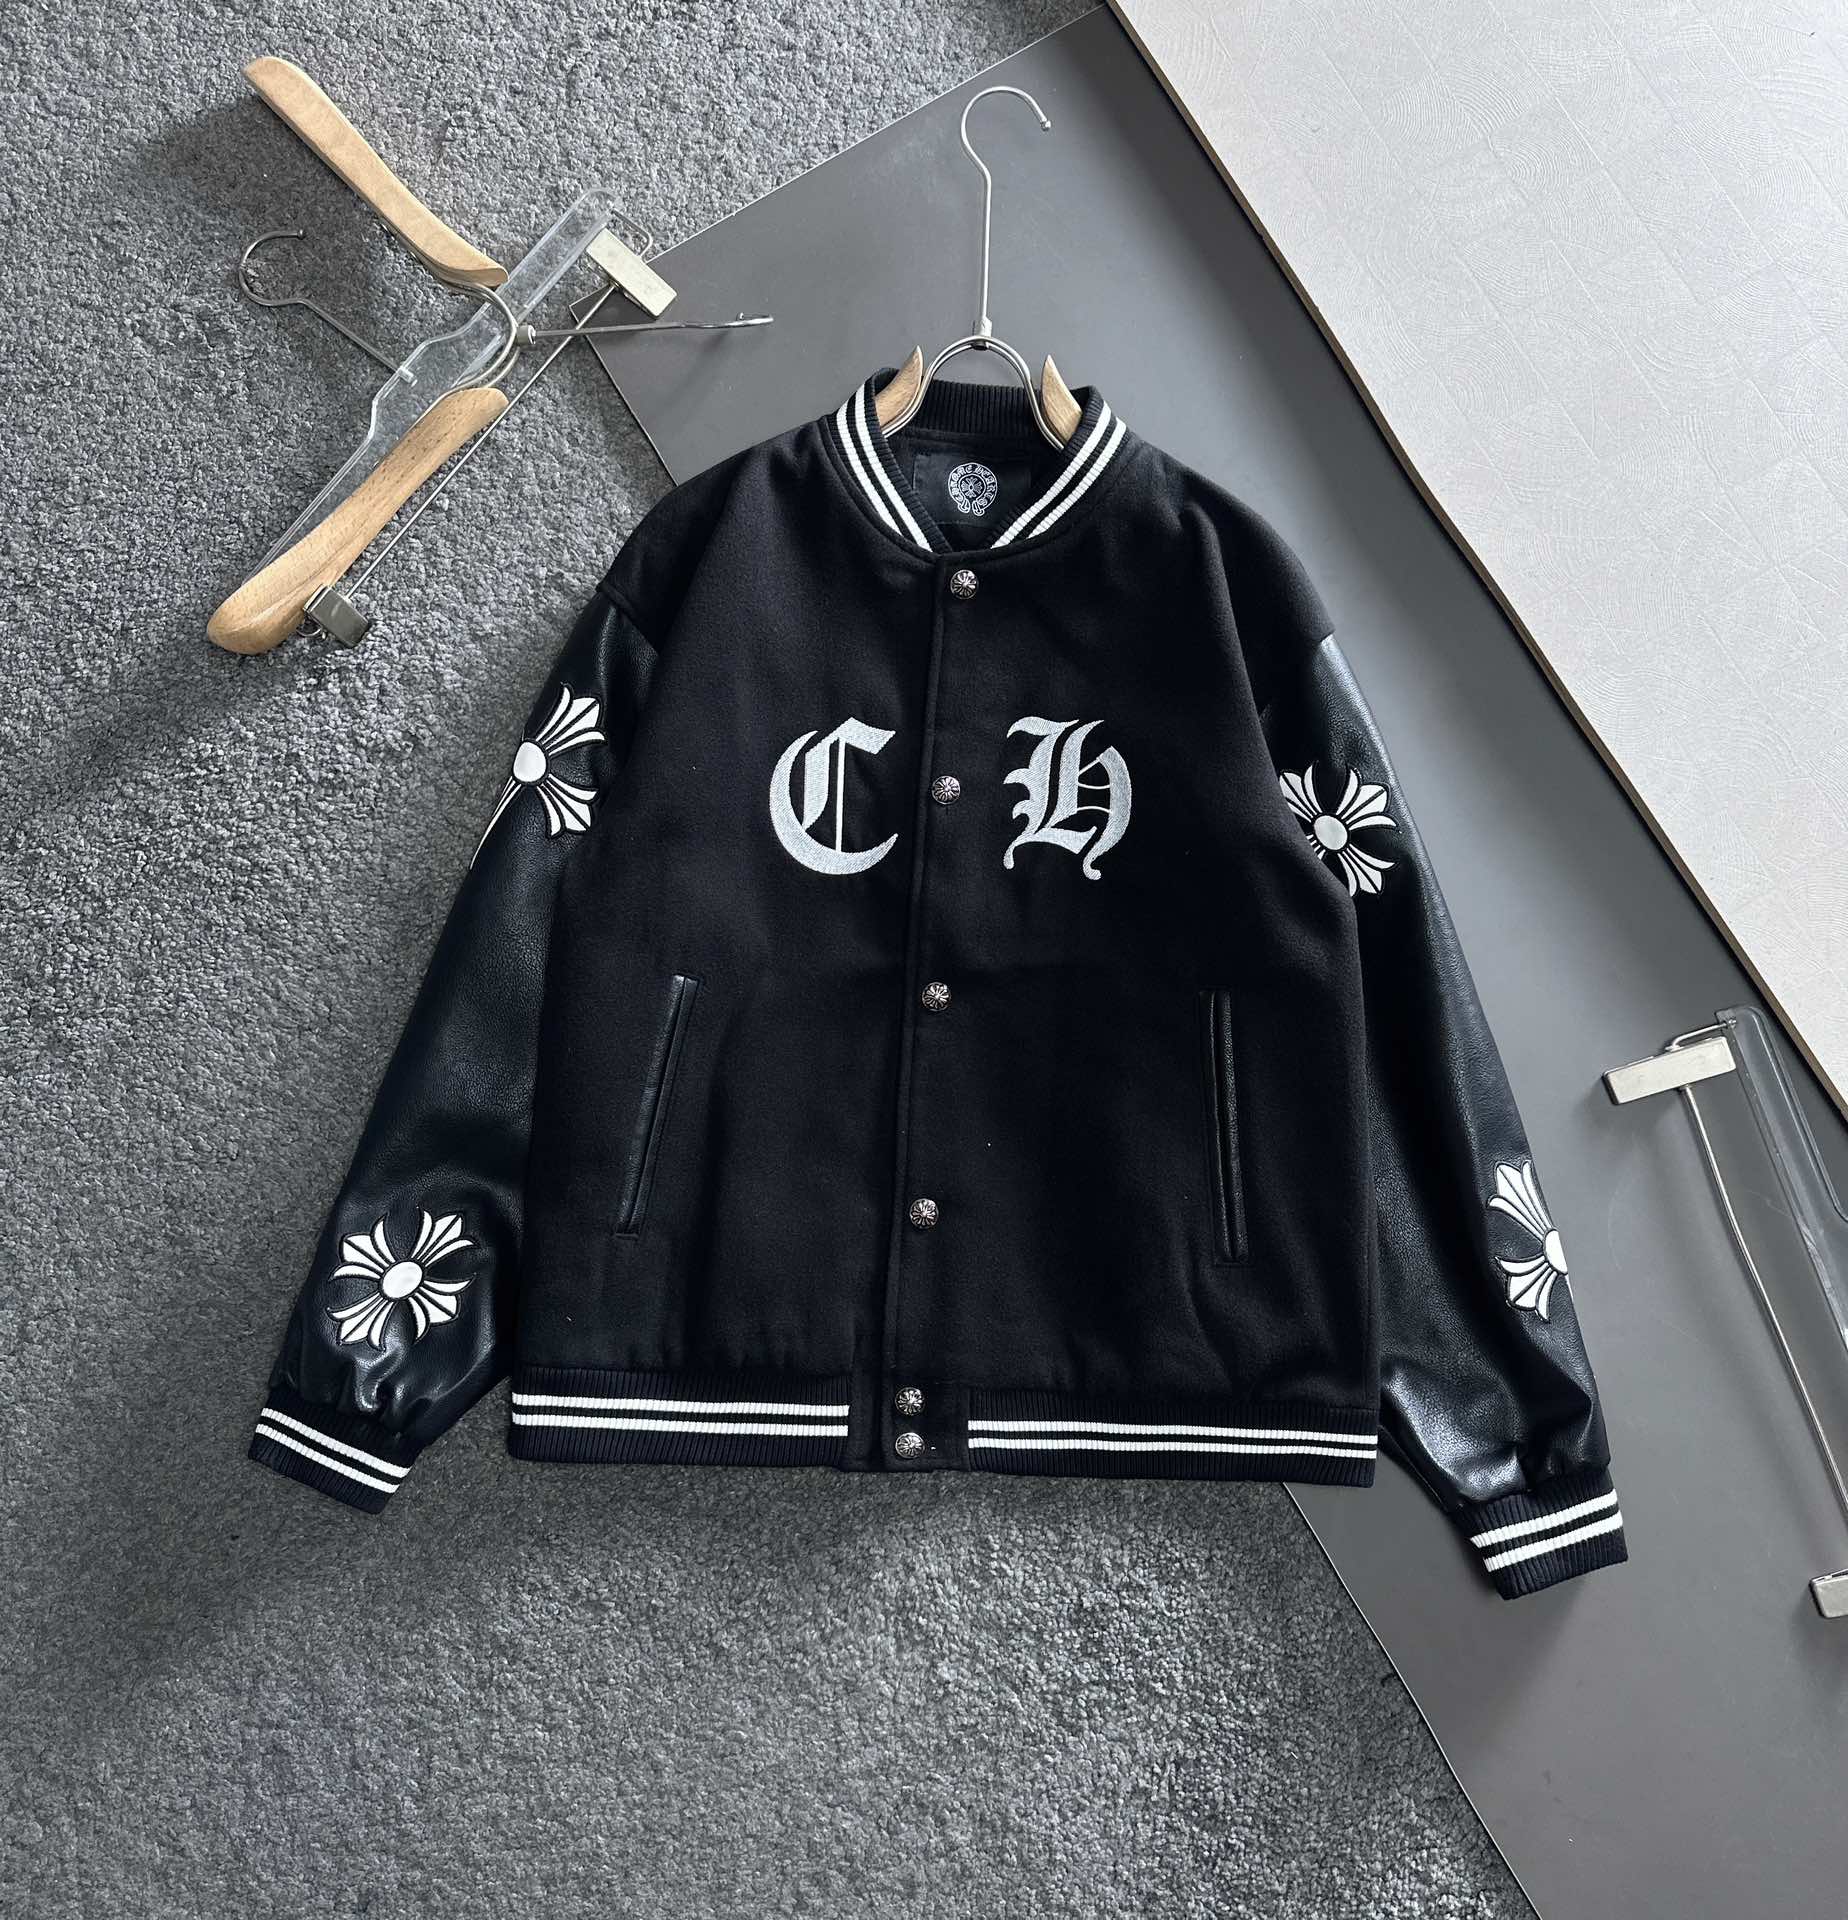 Chrome Hearts Clothing Coats & Jackets Black Embroidery Unisex